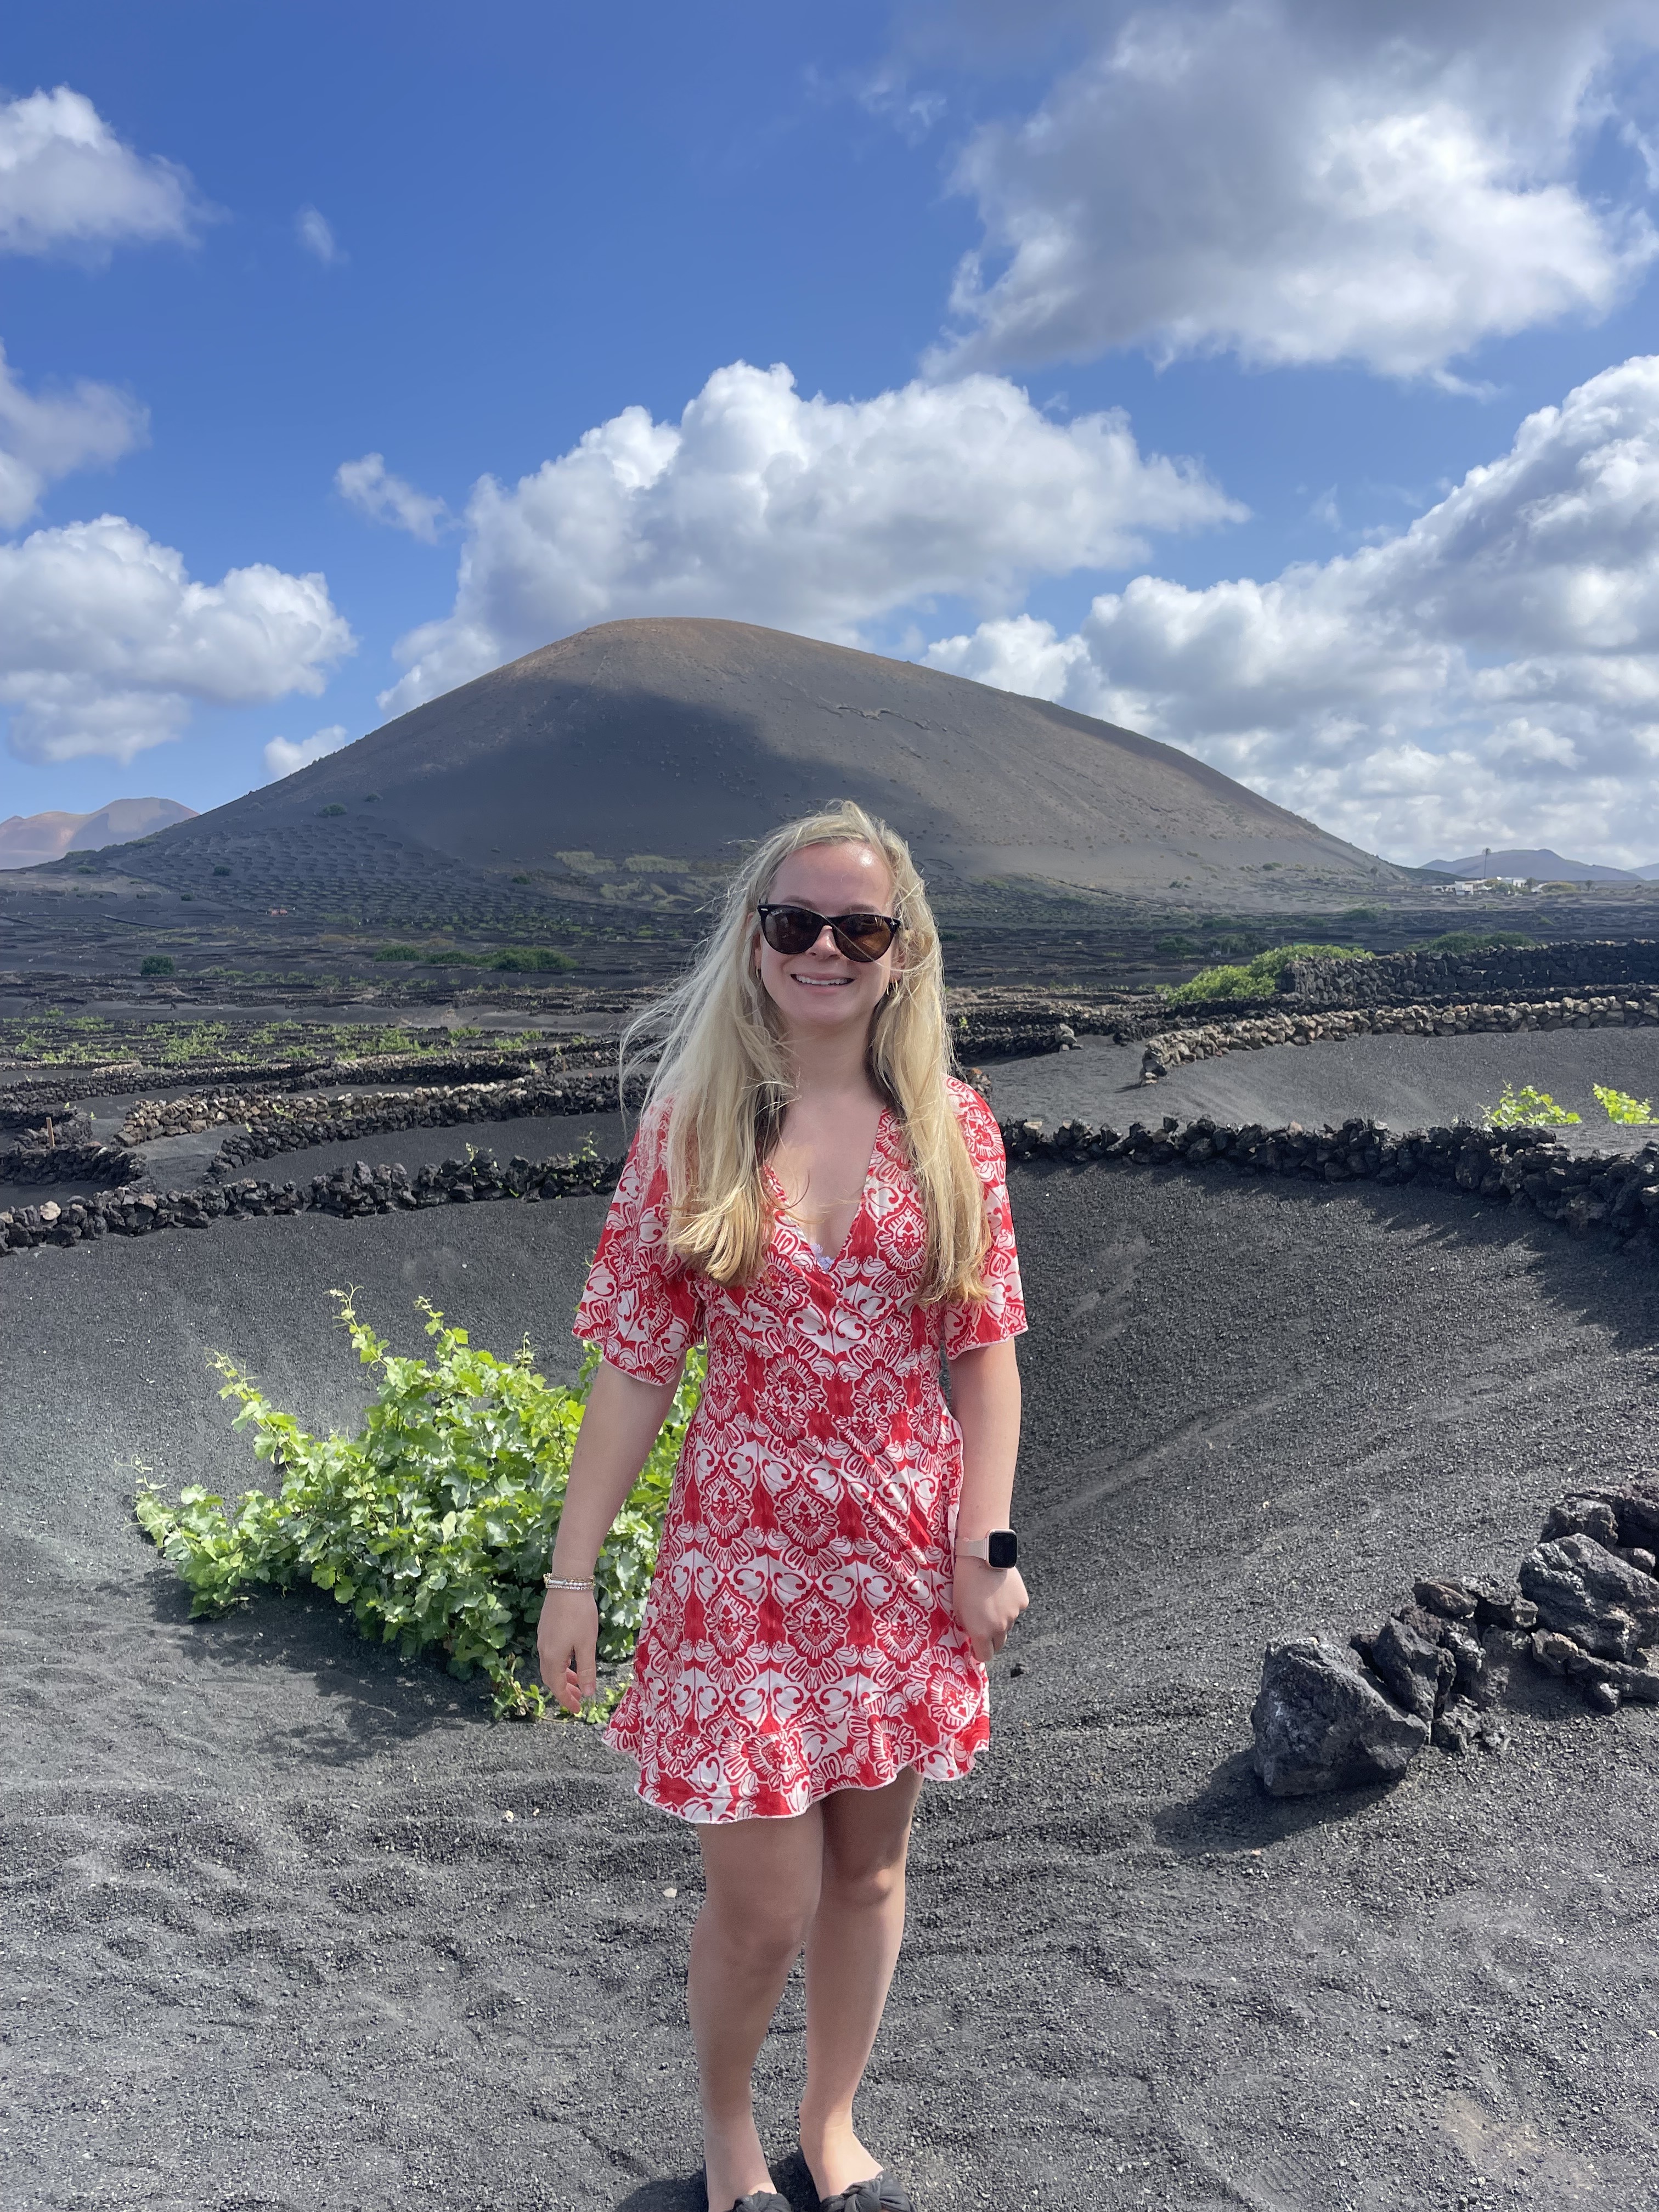 Buchen Sie eine fantastische Vulkantour rund um die Insel